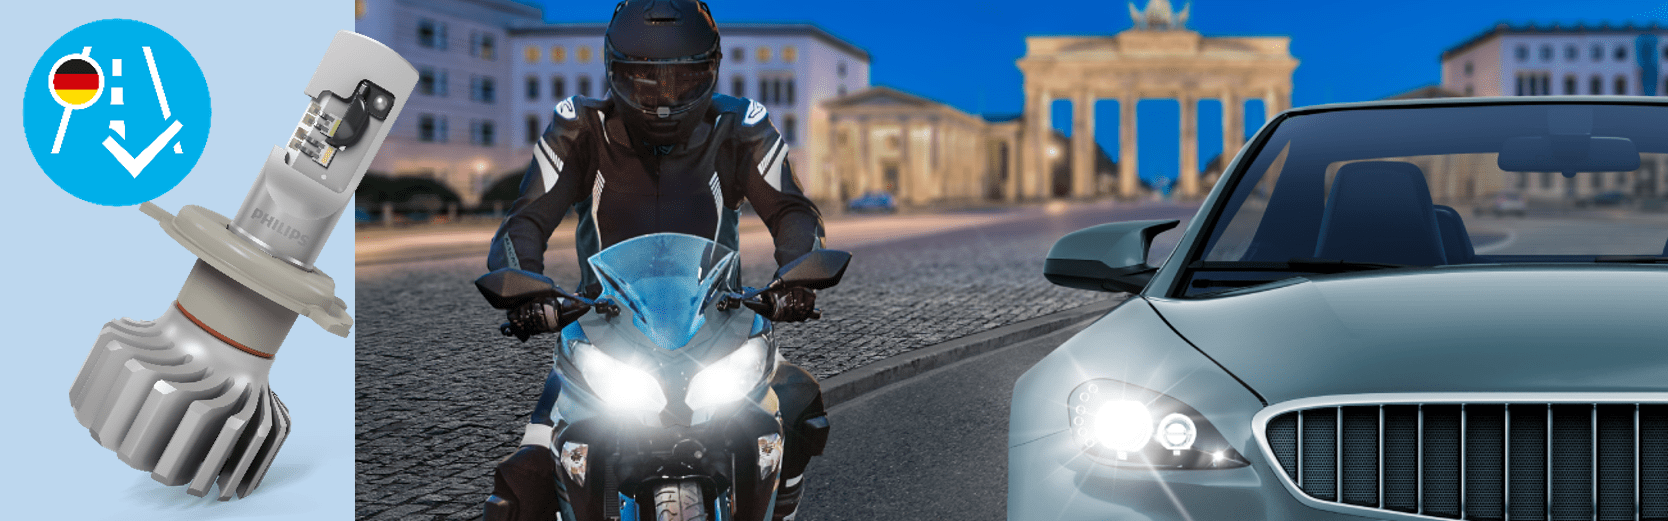 Philips Ultinon Pro6000 LED - Jetzt erstmals auch für Motorräder